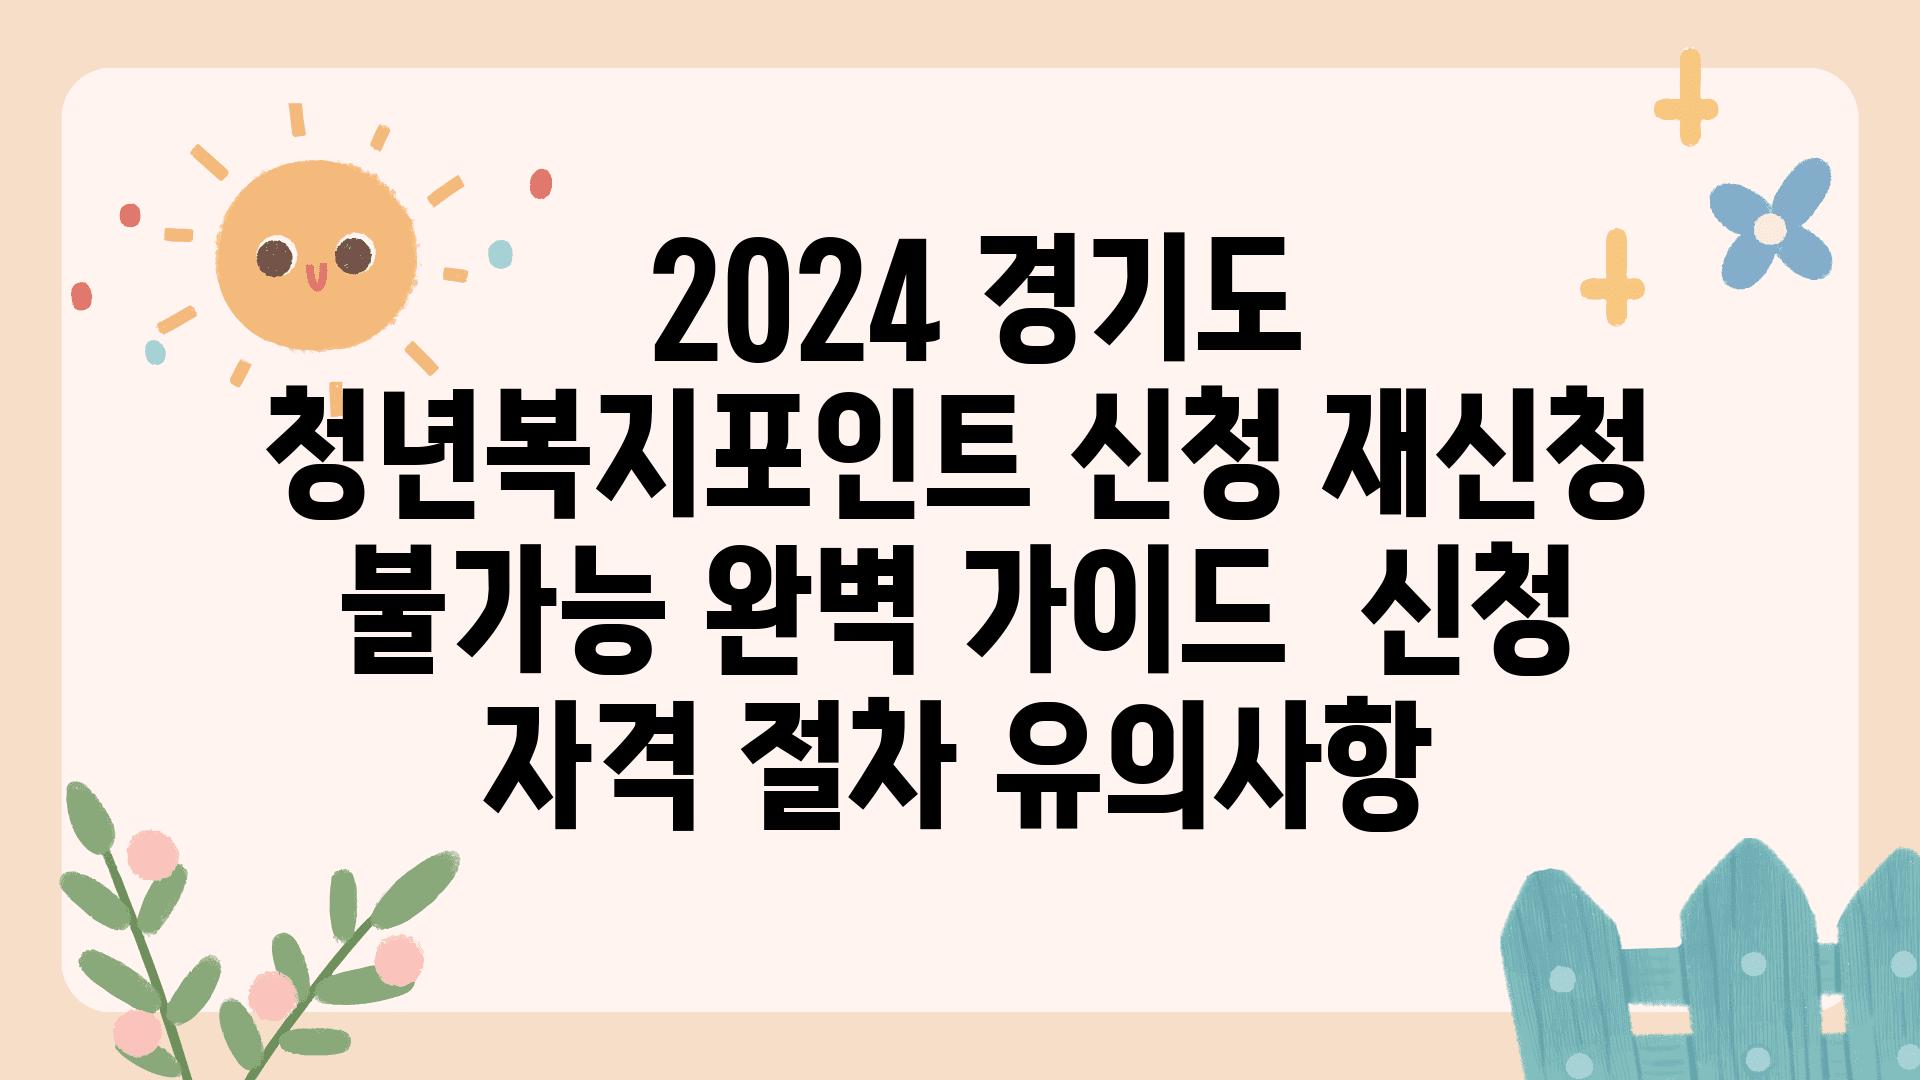  2024 경기도 청년복지포인트 신청 재신청 불가능 완벽 설명서  신청 자격 절차 유의사항